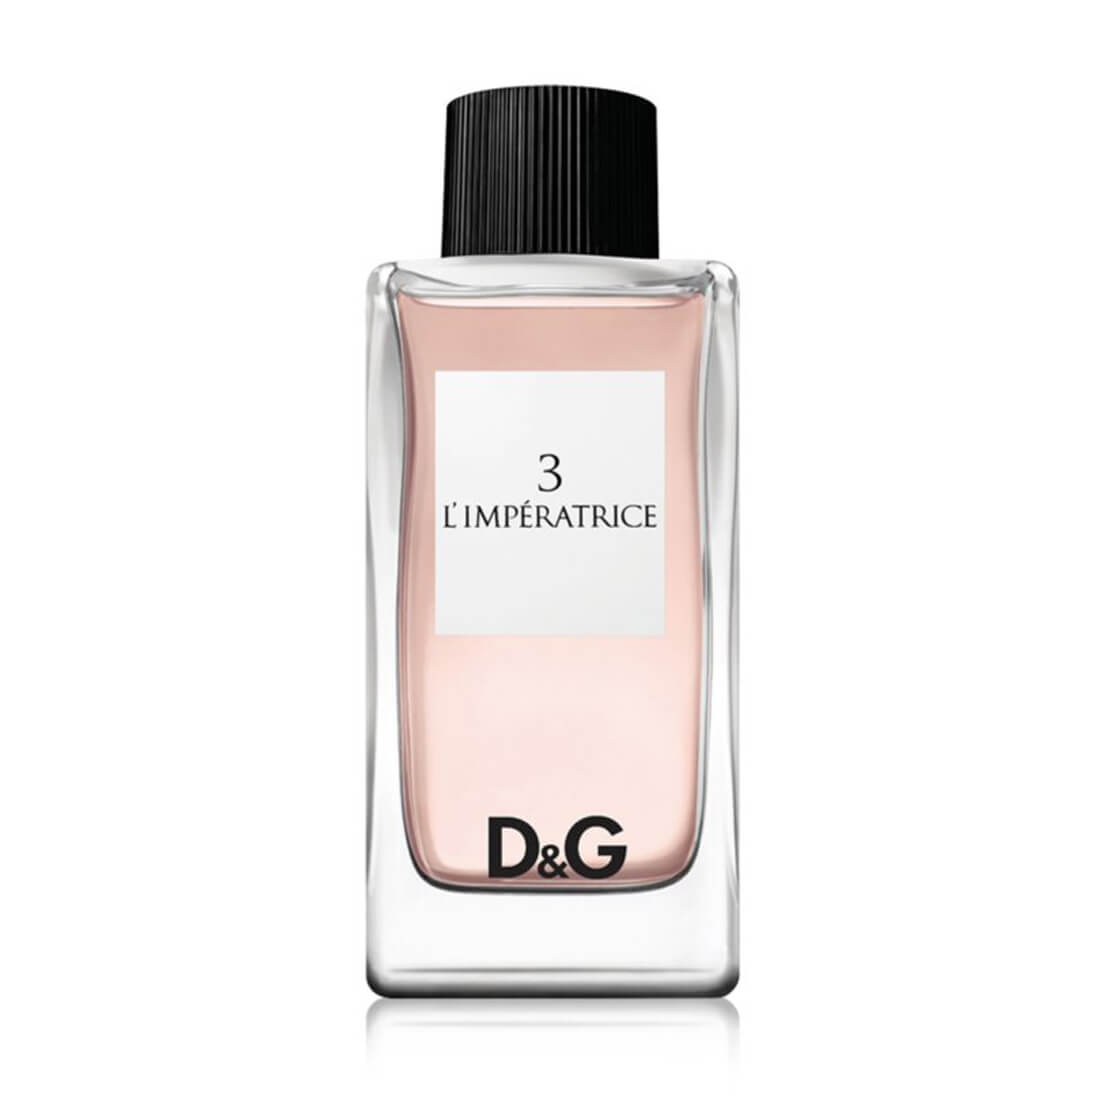 Dolce & Gabbana 3 L’Imperatrice Eau De Toilette 100ml